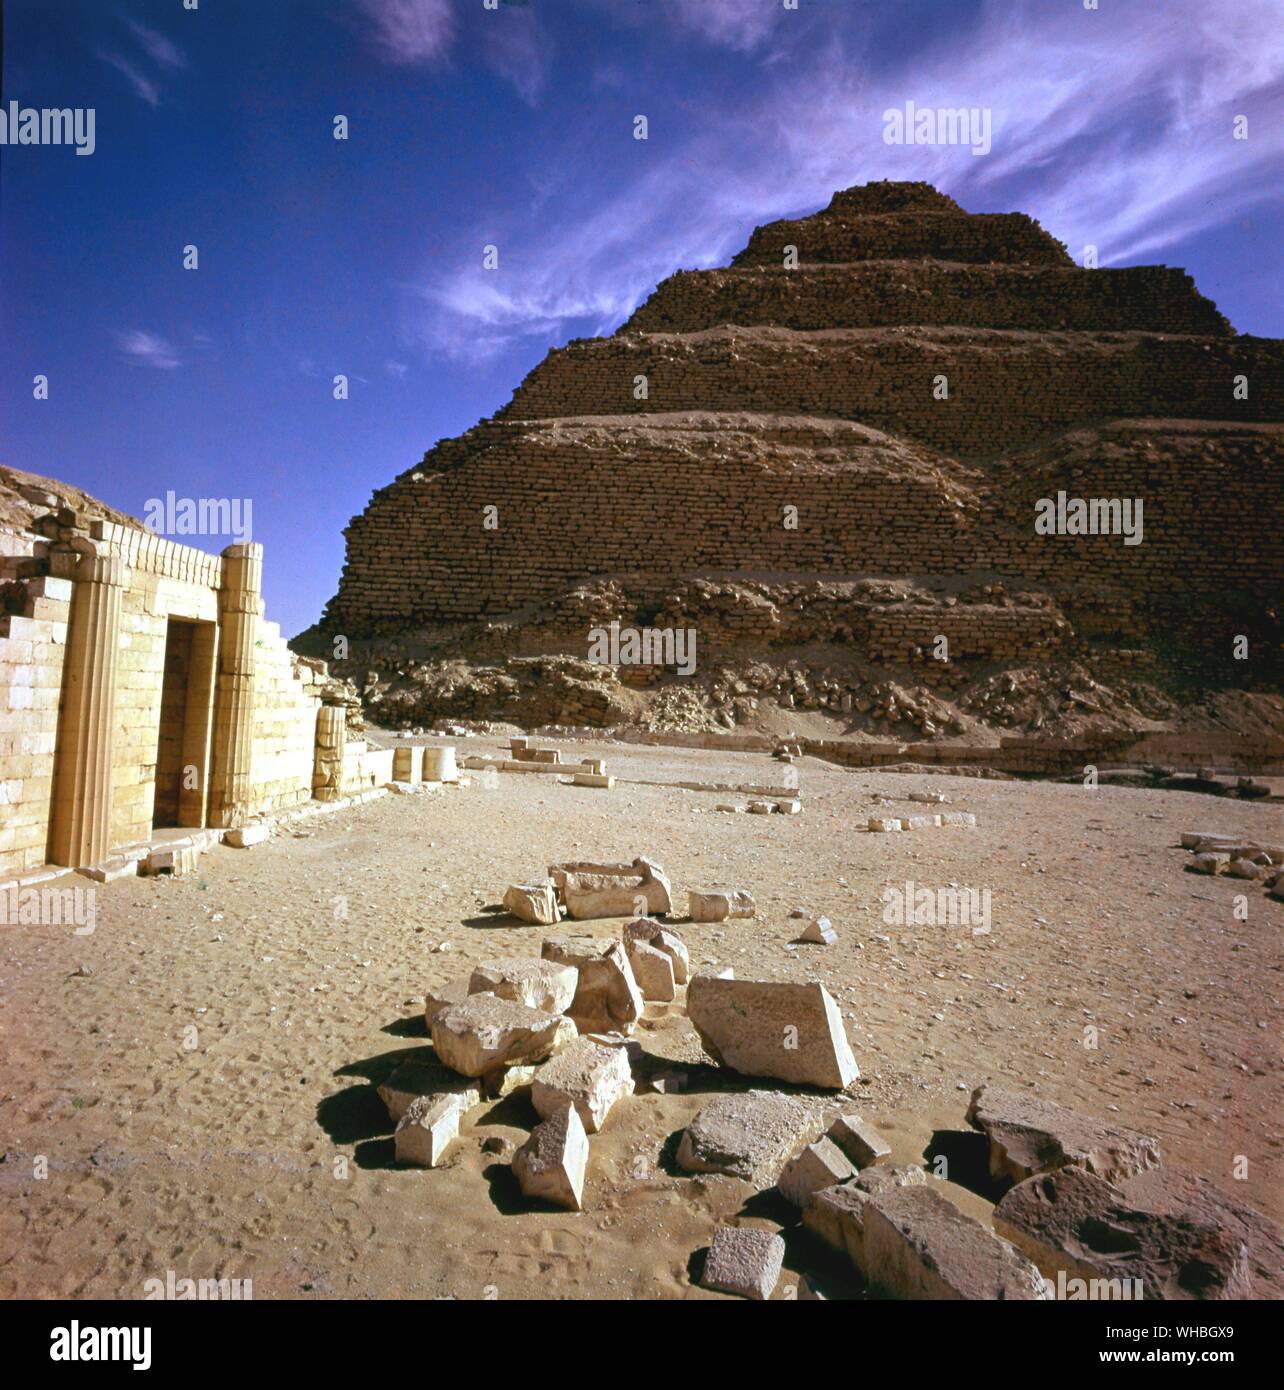 Saqqara - pyramide - Saqqara, Sakkara, Saqqarah est un vaste cimetière antique, en Egypte, avec la plus ancienne pyramide (31,216381 29,871264° N° E). Il est situé à quelque 30 km au sud du Caire et couvre une superficie d'environ 7 km par 1,5 km.. Banque D'Images